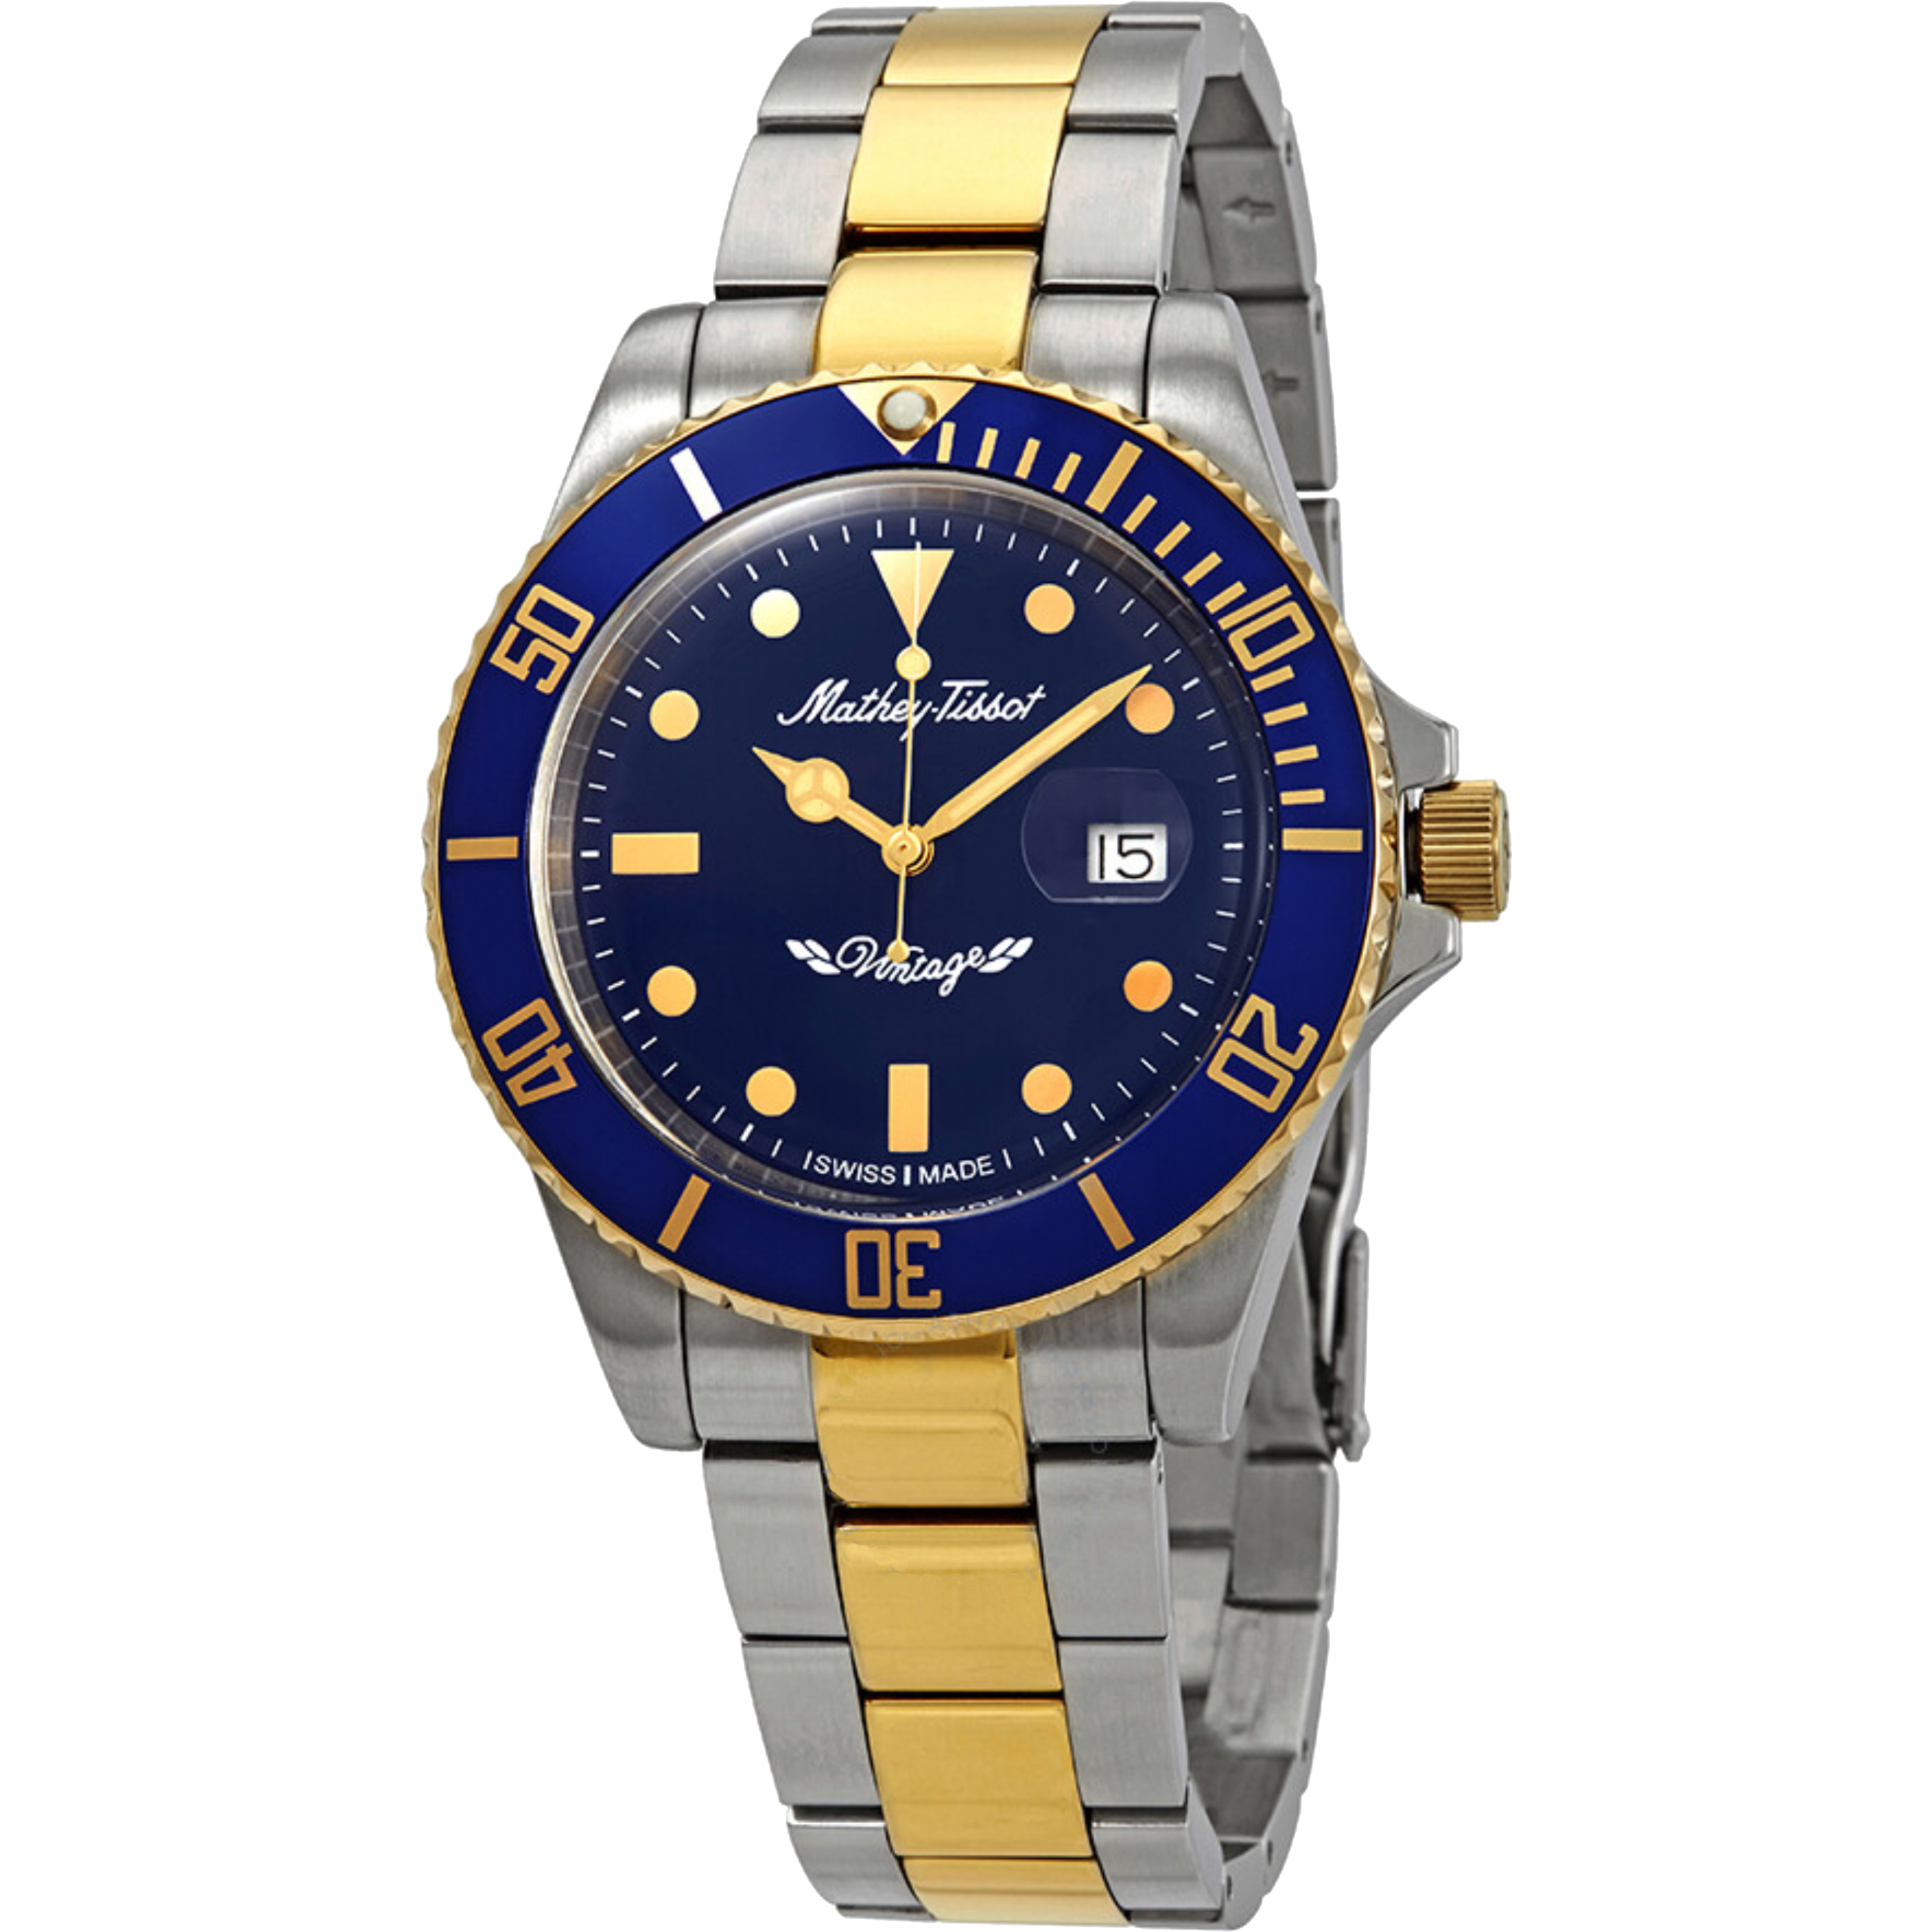 שעון יד לגבר Mathey Tissot H901BBU 42mm צבע זהב/כסף/כחול - אחריות לשנה ע"י היבואן